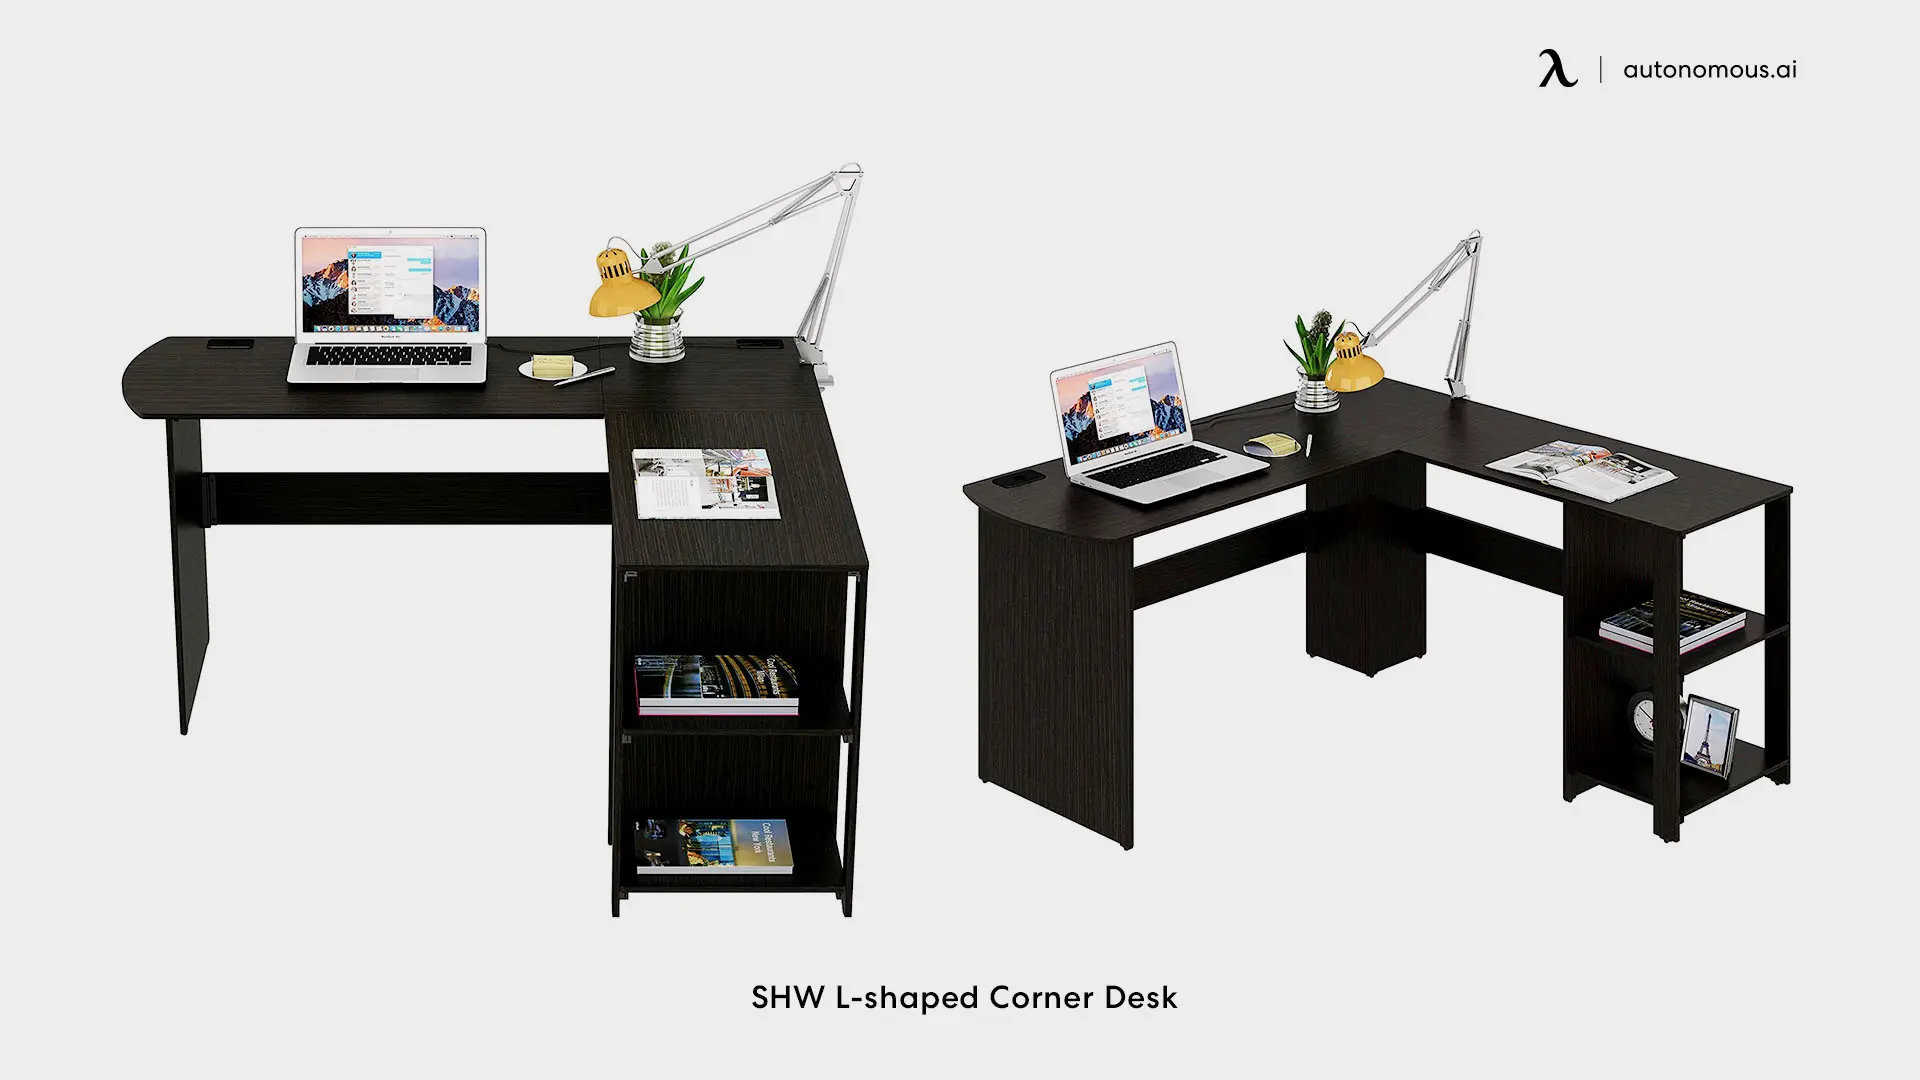 SHW L-shaped Computer Desk - brown desk